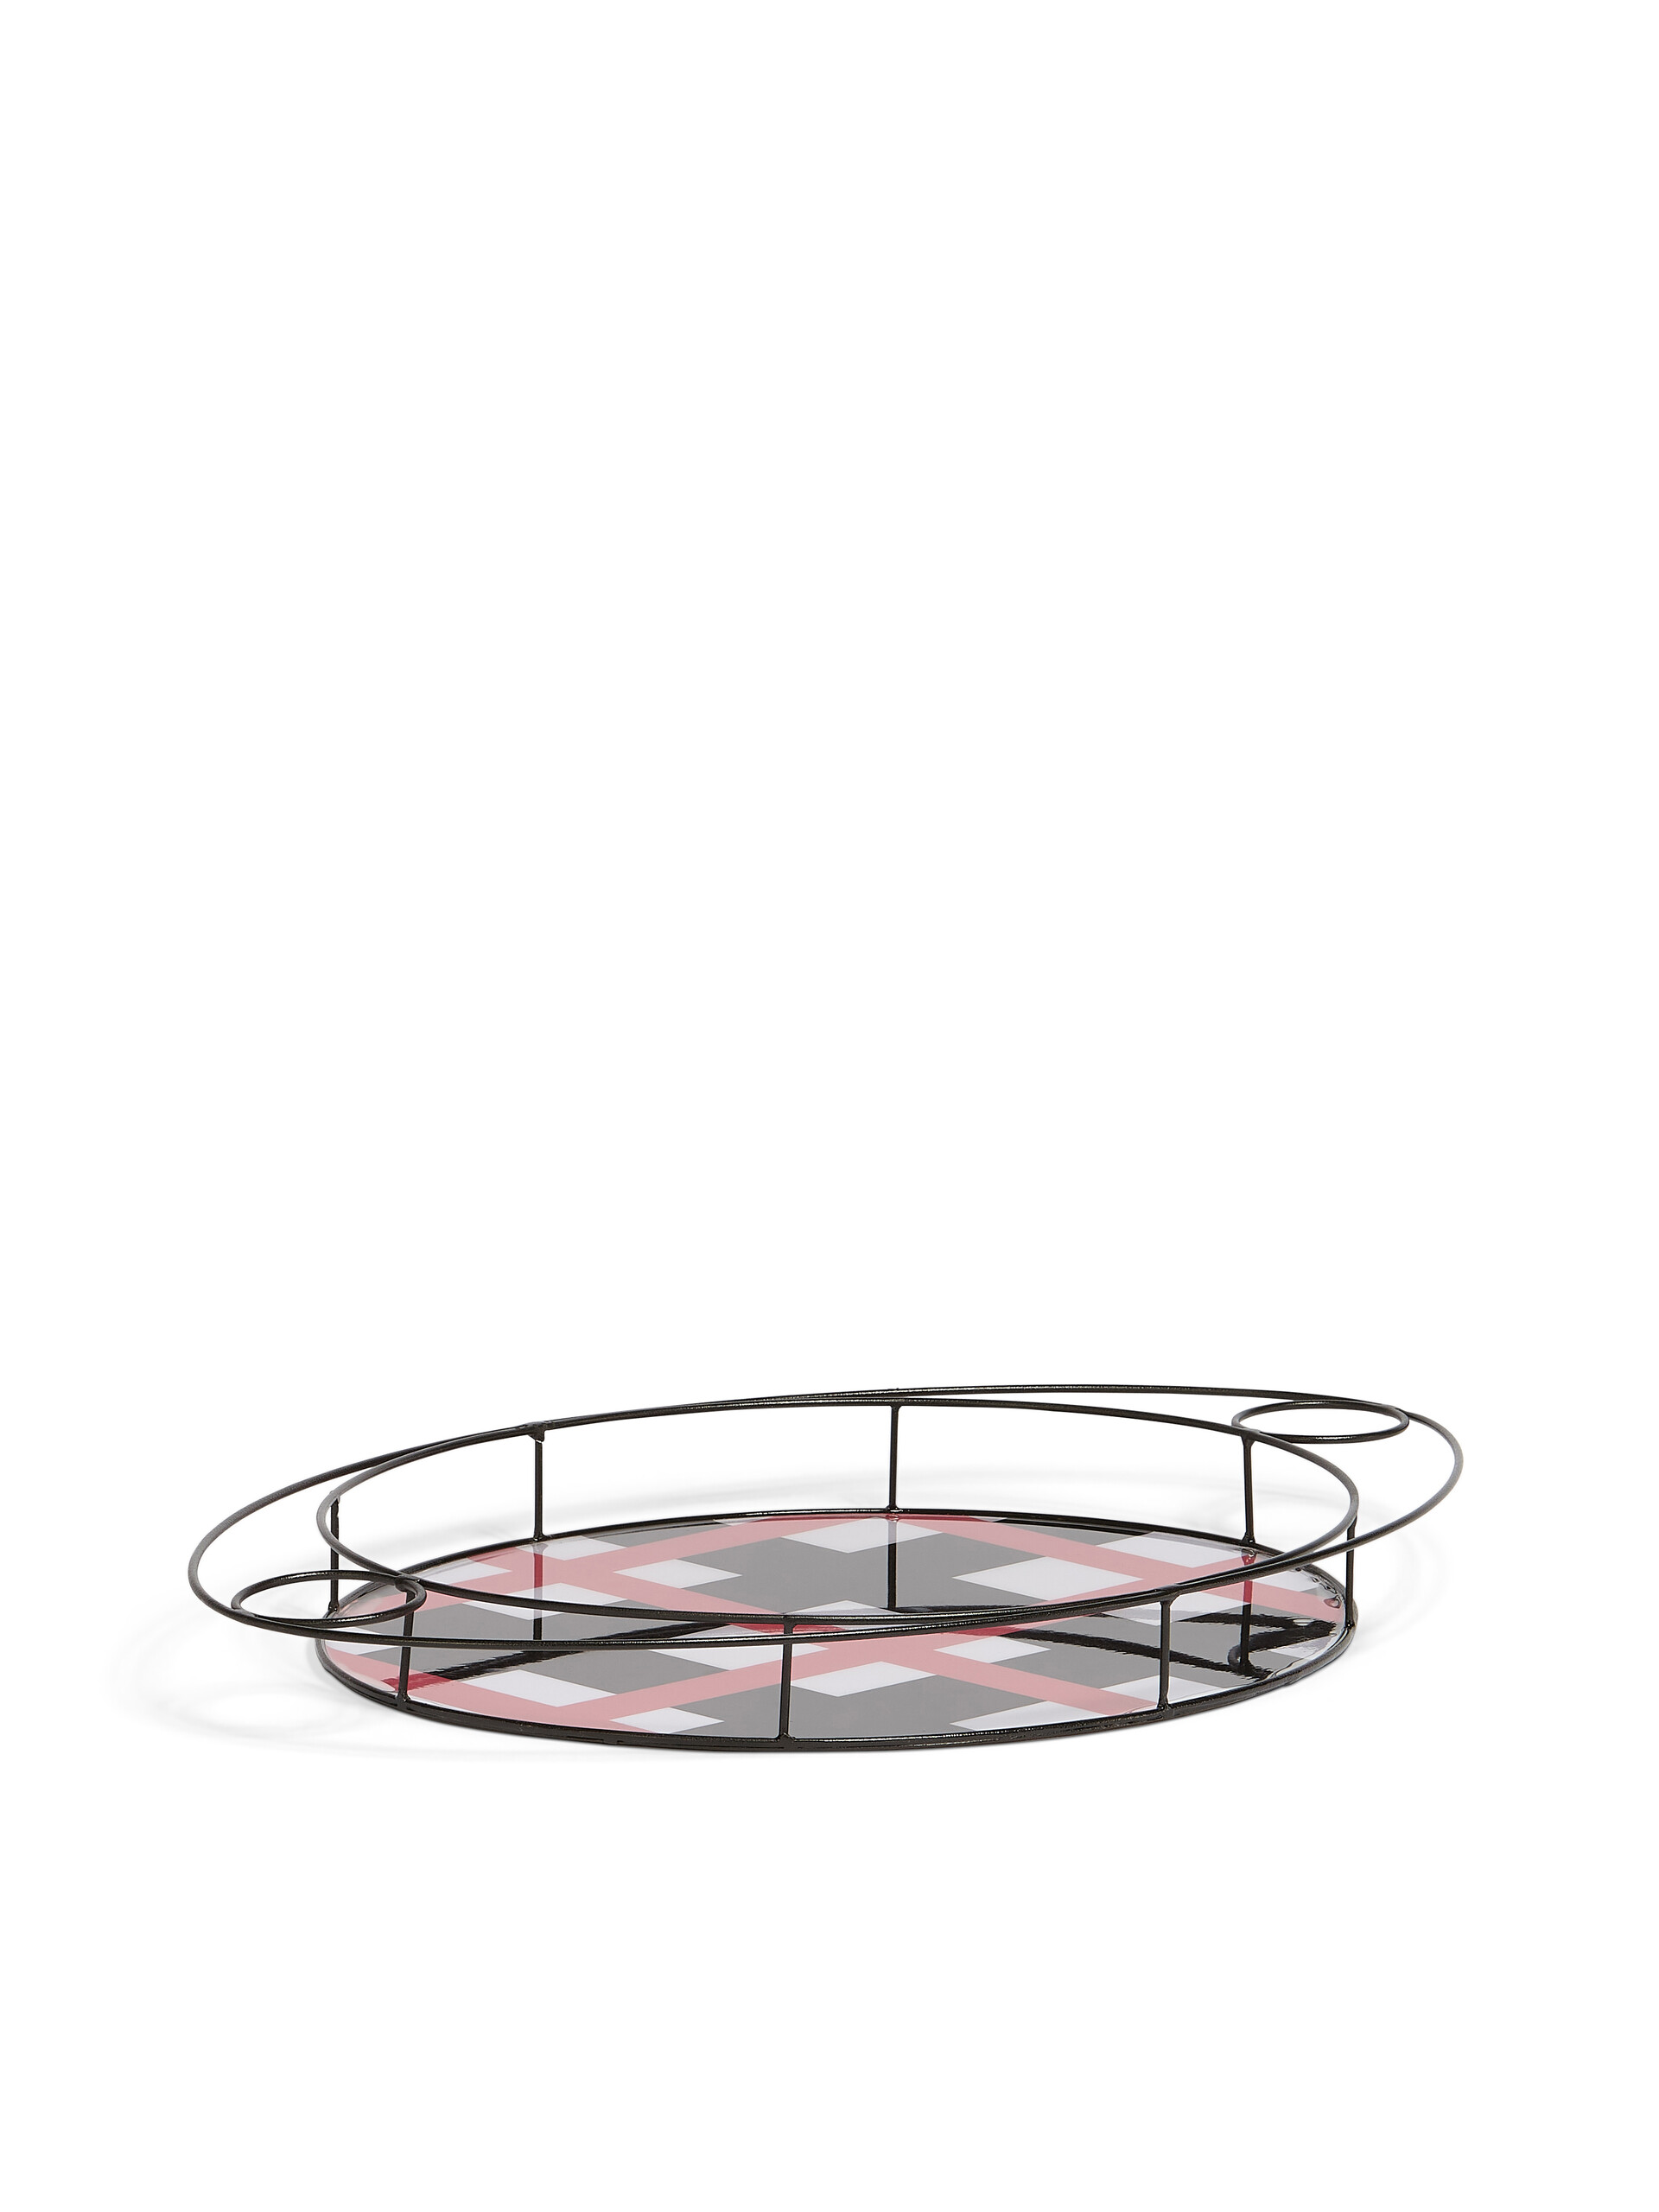 Vassoio ovale MARNI MARKET in ferro resina - Home Accessories - Image 2